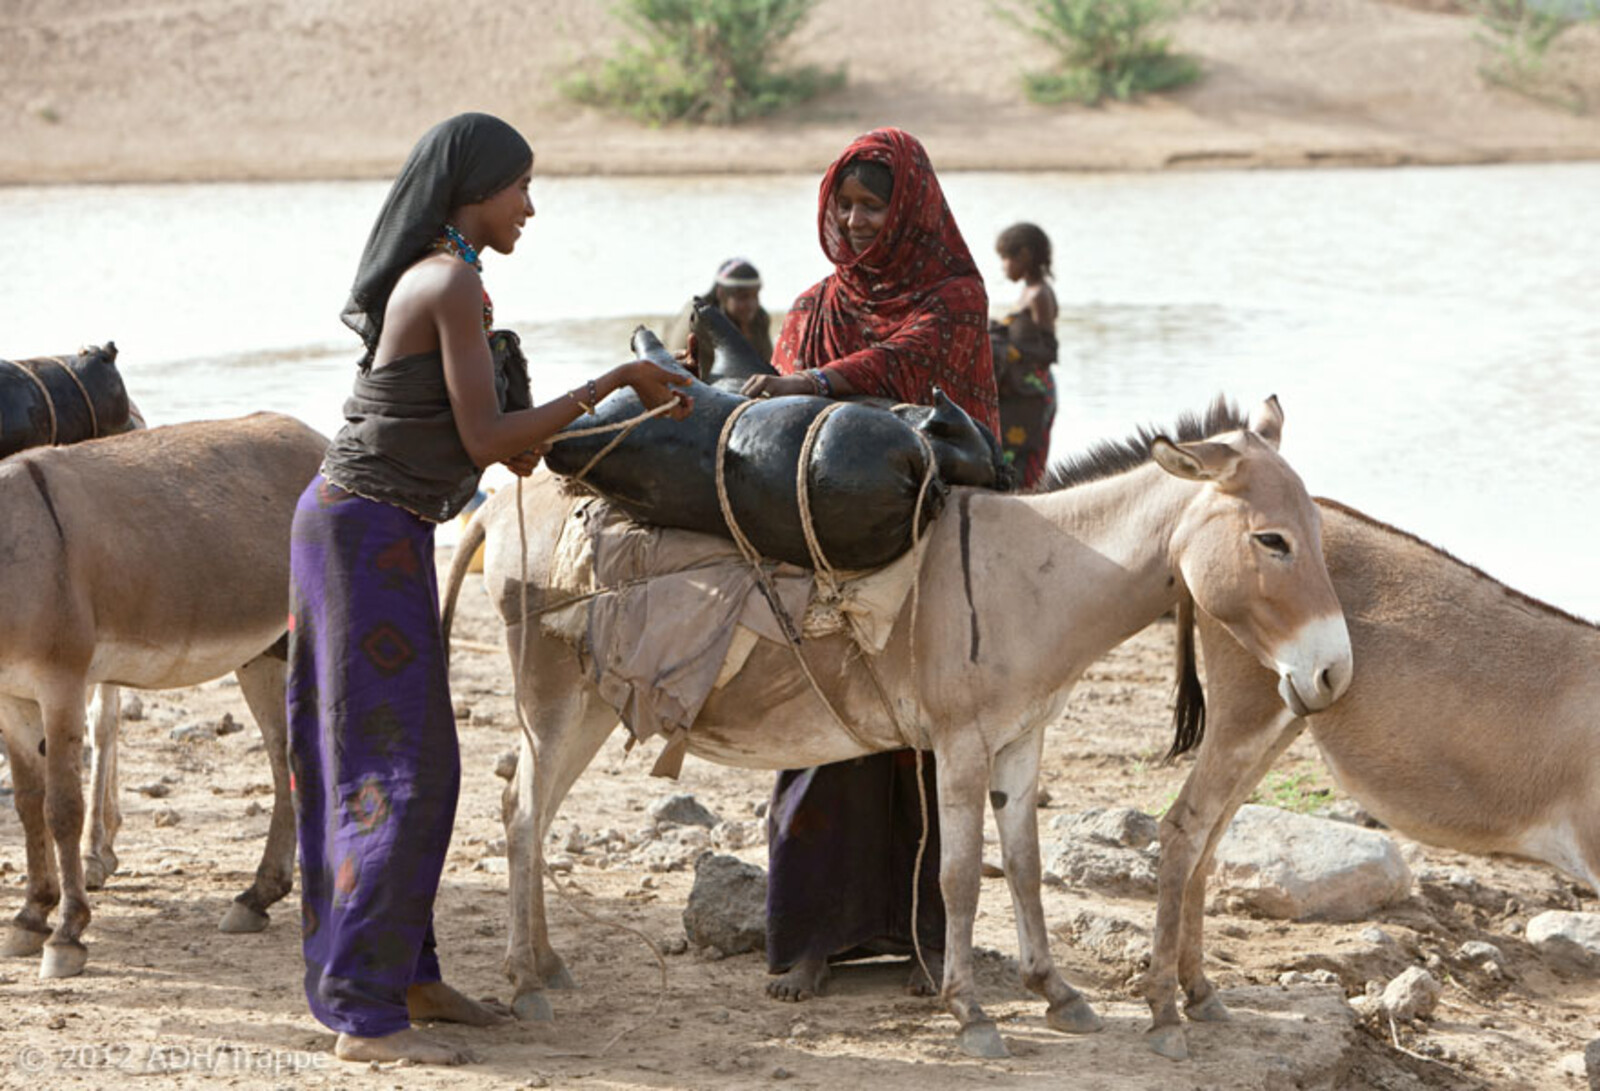 Zwei Frauen befestigen eine mit Wasser gefüllte Ziegenhaut auf einem Esel.